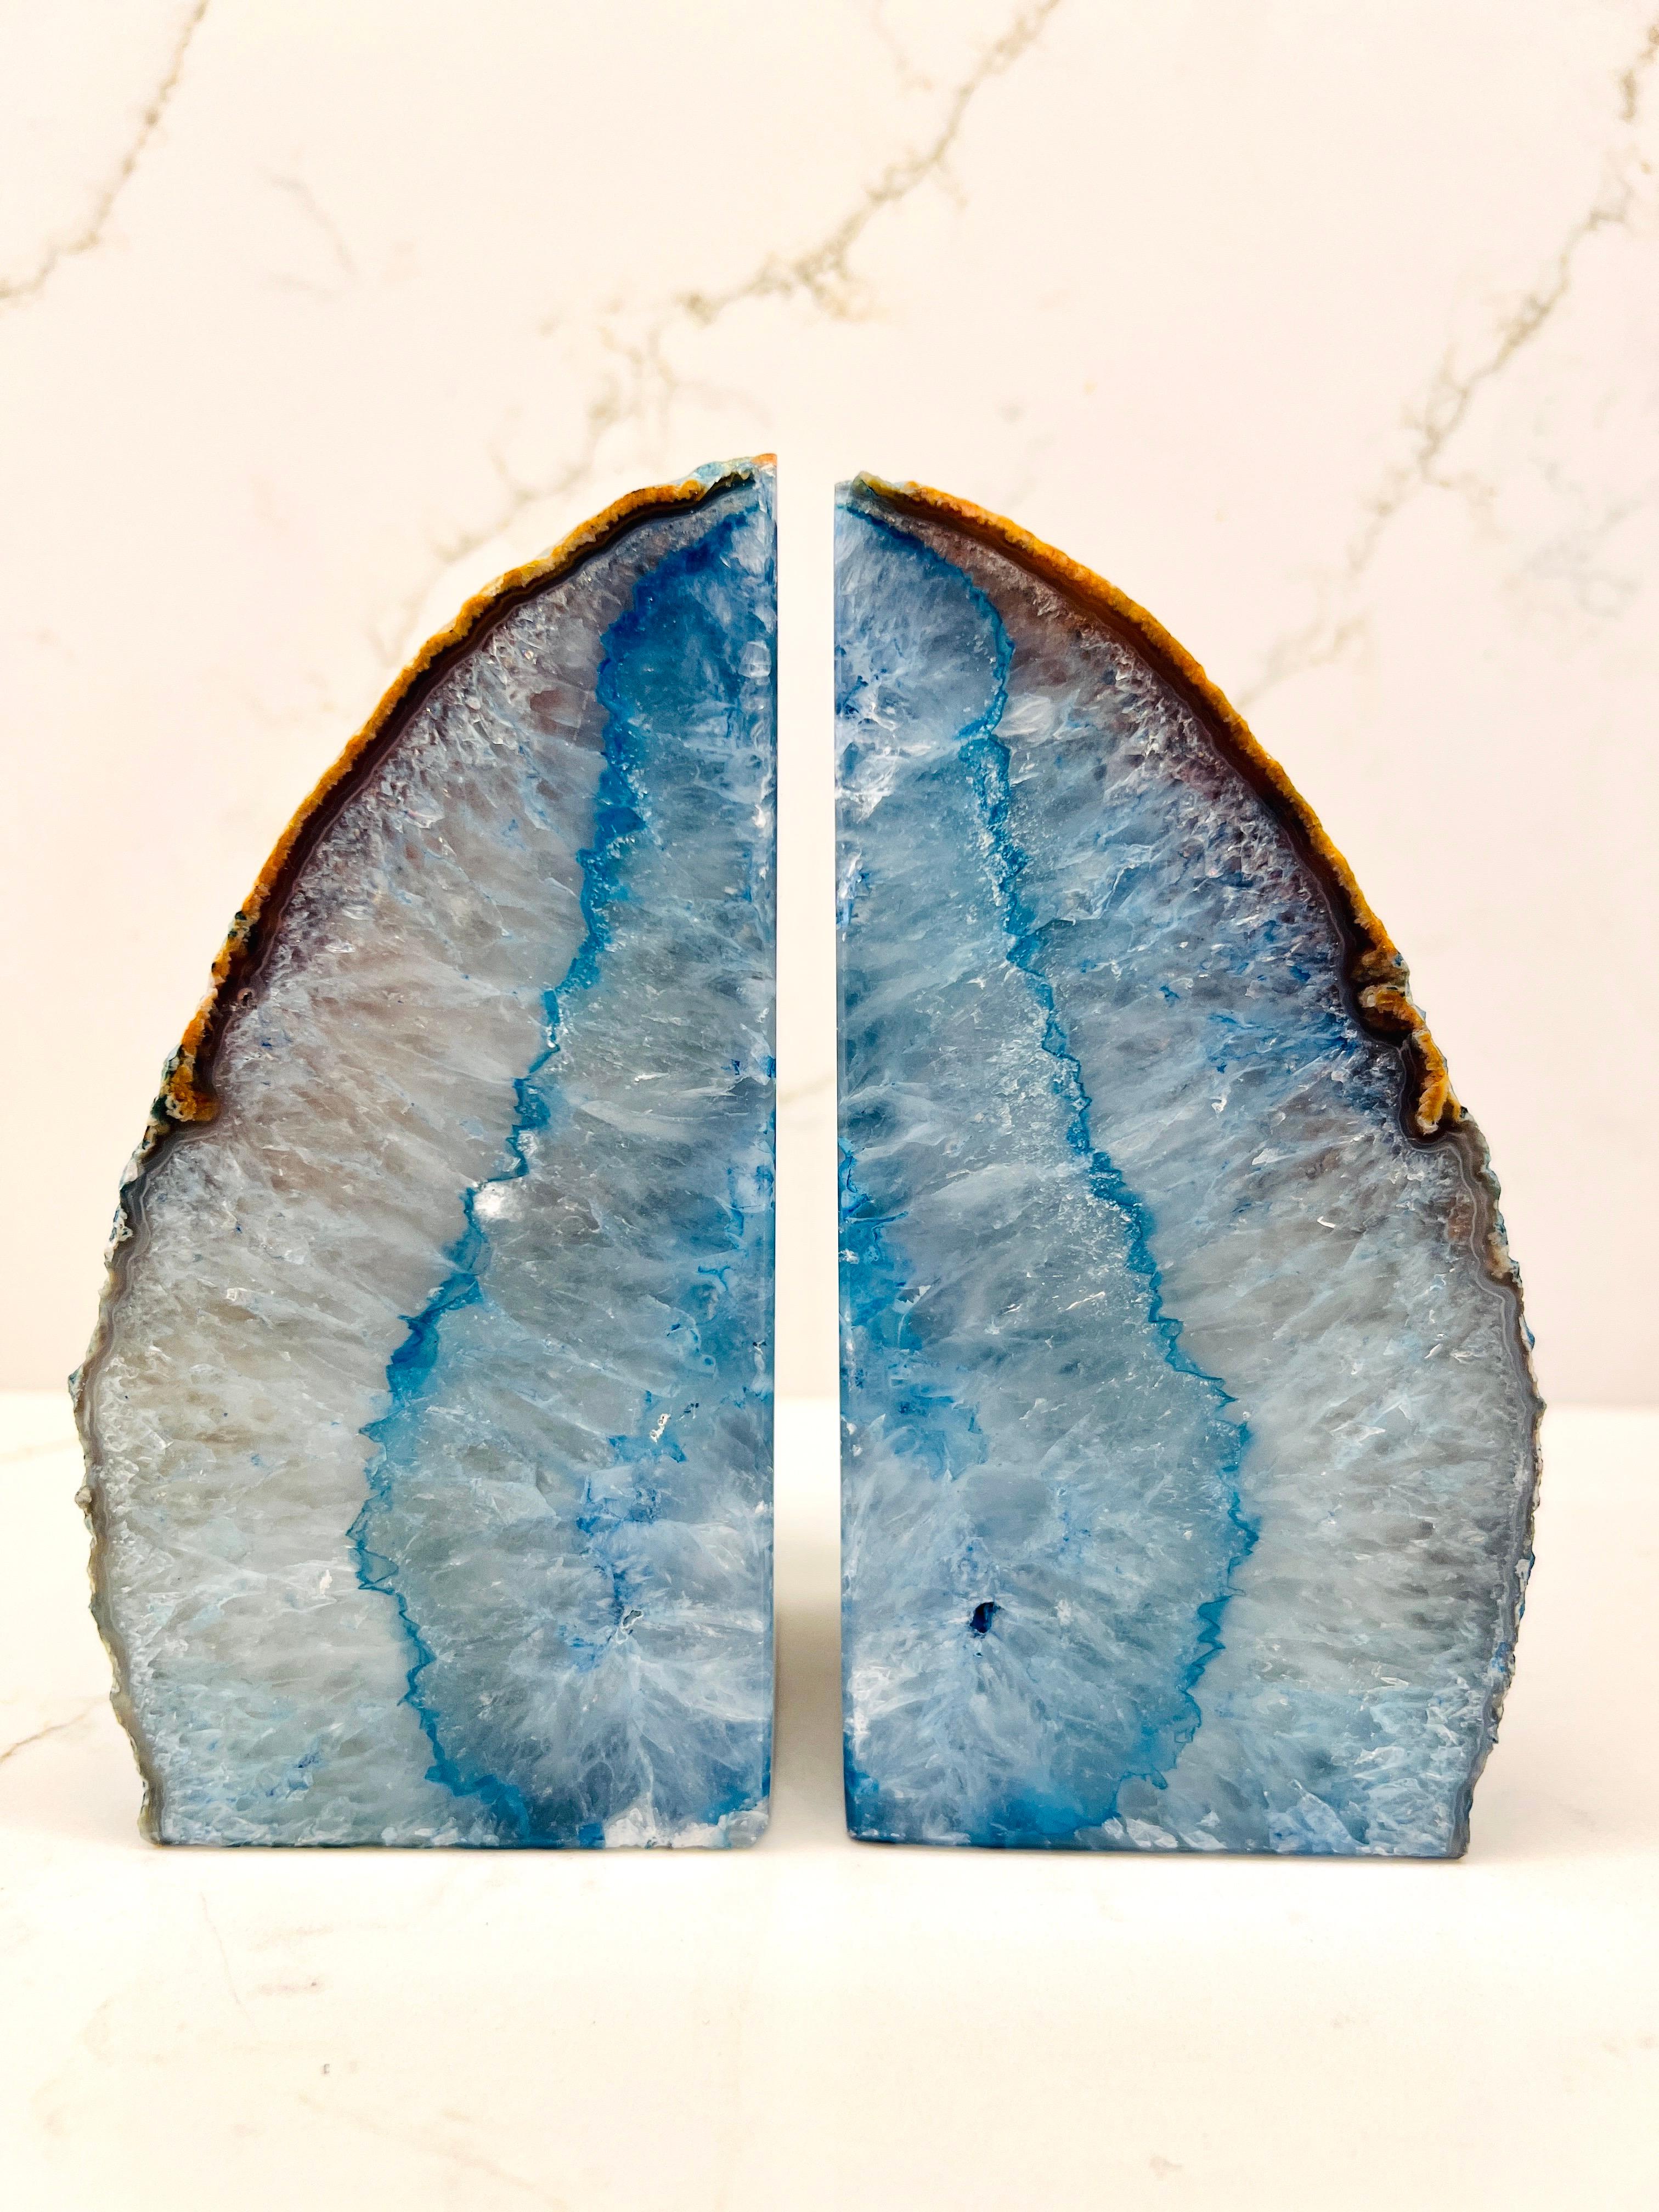 Ein Paar Buchstützen aus natürlichem Quarzkristall mit leuchtenden Blautönen. Die handgeschnitzten Exemplare haben polierte Fronten mit rauen, lebendigen Kanten. Sie bestehen aus kristallisierten Mineralien, die Tausende von Jahren brauchen, um sich